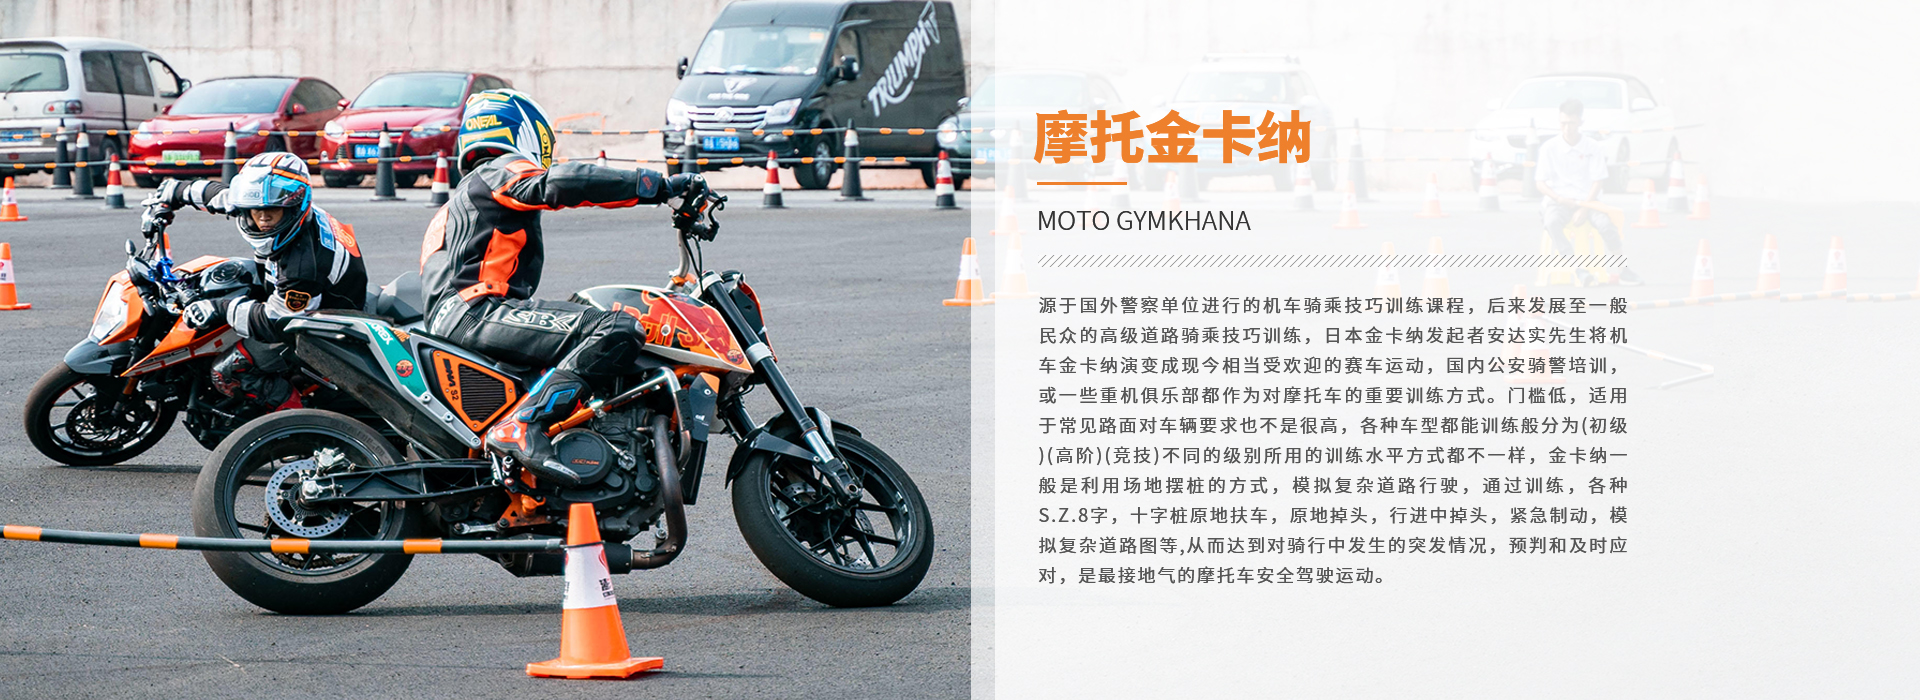 摩托车考证,摩托车金卡纳,摩托车安驾培训